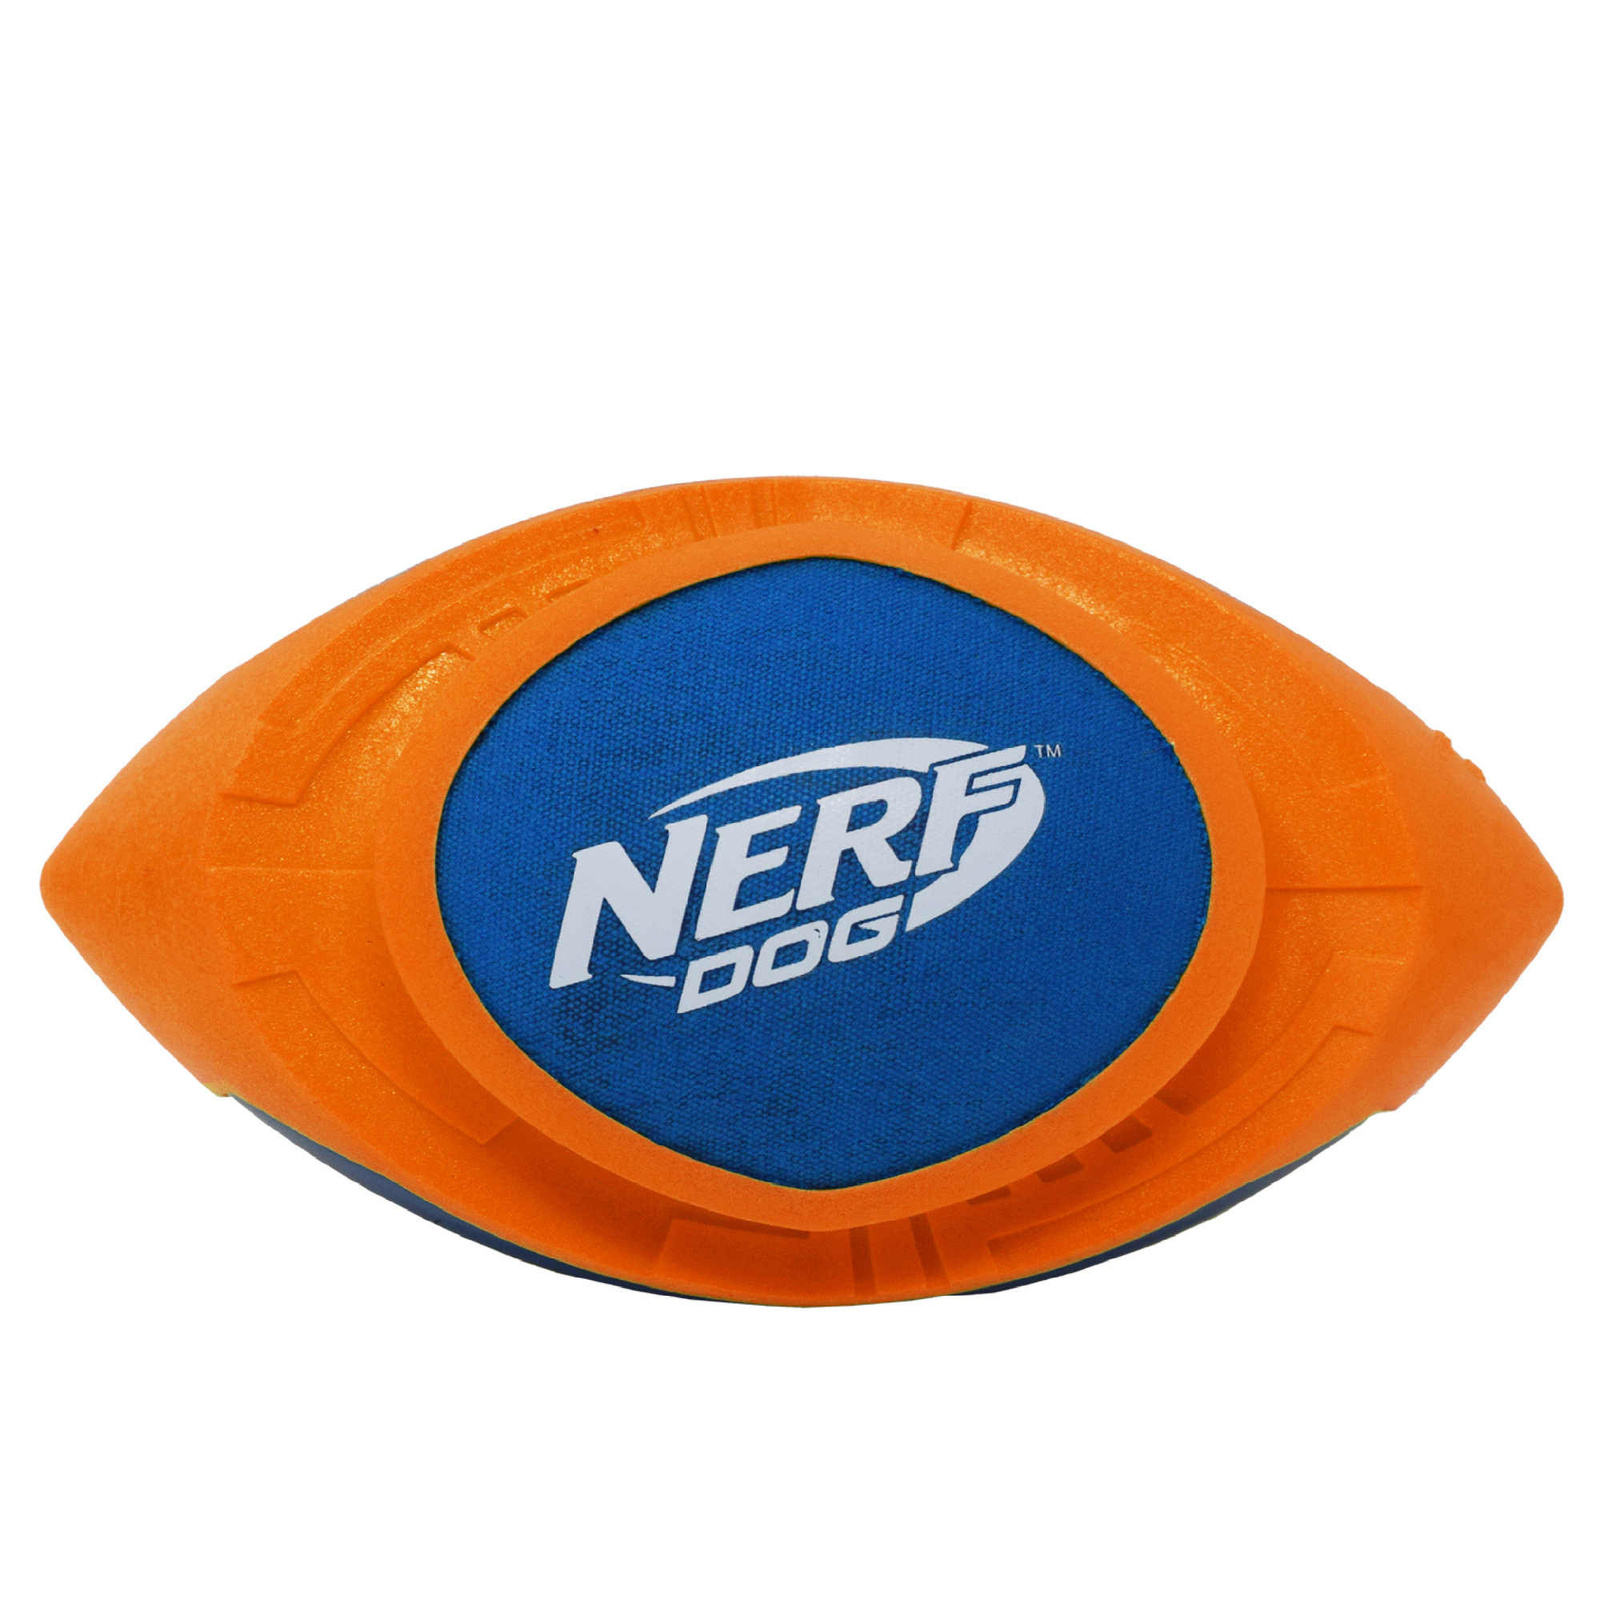 Nerf Nerf мяч для регби из вспененной резины и нейлона, 18 см (серия Мегатон), (синий/оранжевый) (263 г) nerf nerf снаряд из вспененной резины и термопластичной резины 30 см серия мегатон синий зеленый 290 г